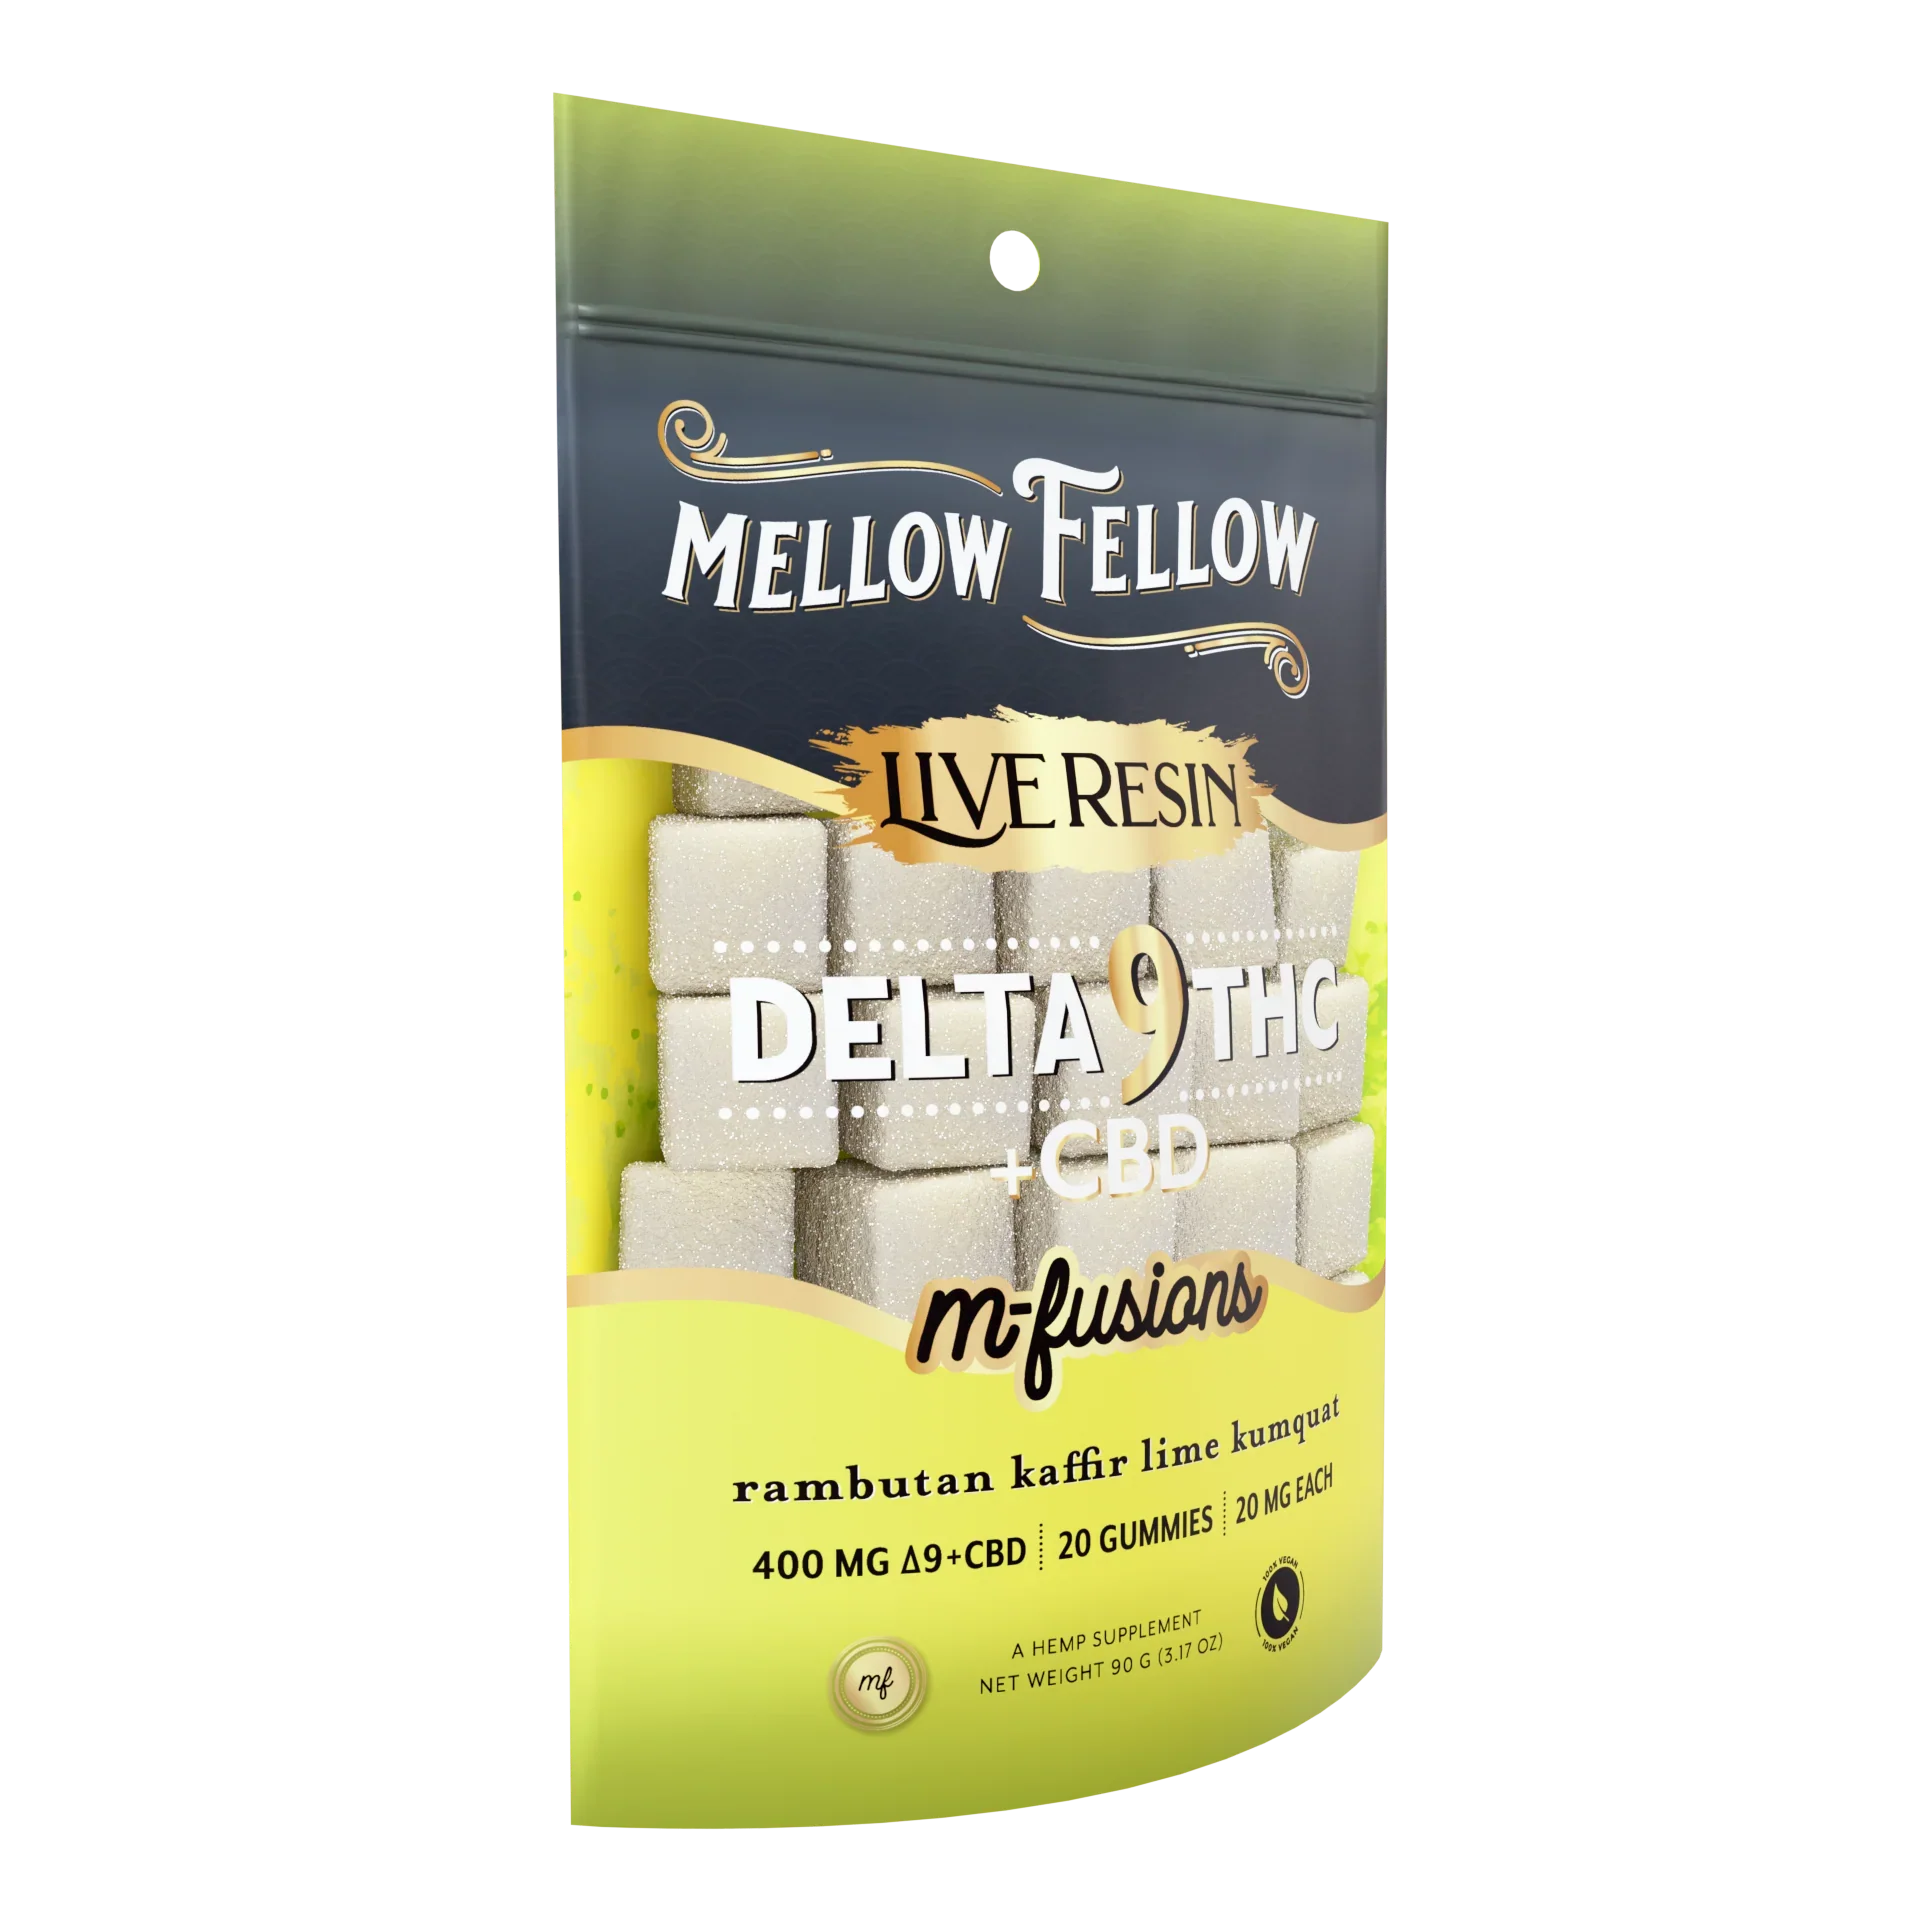 Mellow Fellow Delta 9 Live Resin Edibles 400mg - Rambutan Kaffir Lime Kumquat Best Price